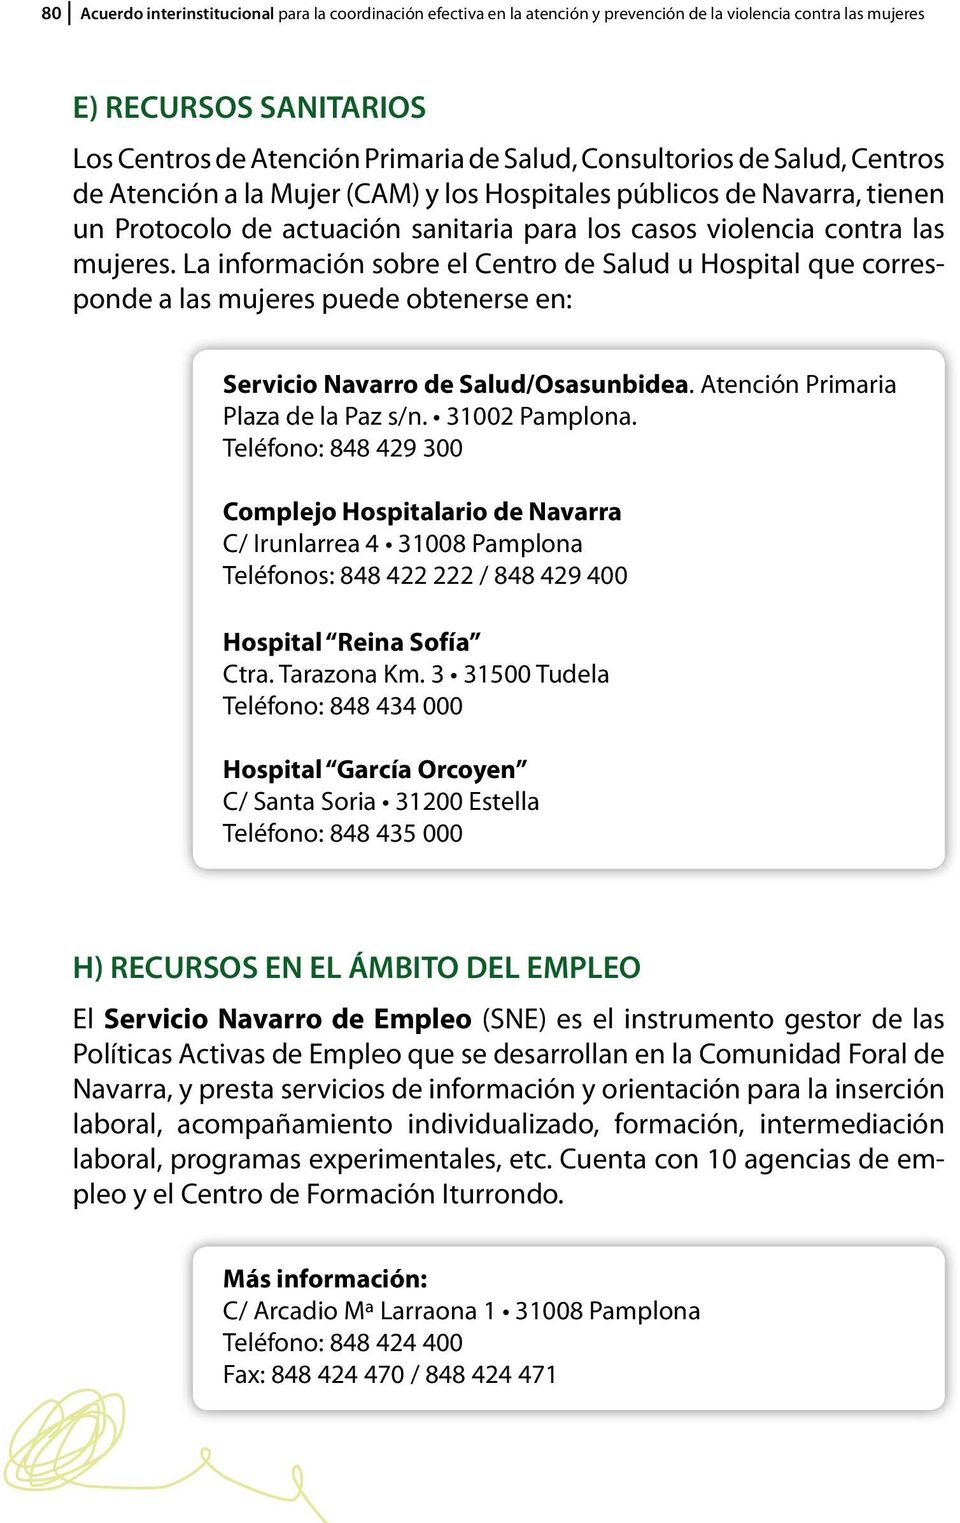 La información sobre el Centro de Salud u Hospital que corresponde a las mujeres puede obtenerse en: Servicio Navarro de Salud/Osasunbidea. Atención Primaria Plaza de la Paz s/n. 31002 Pamplona.